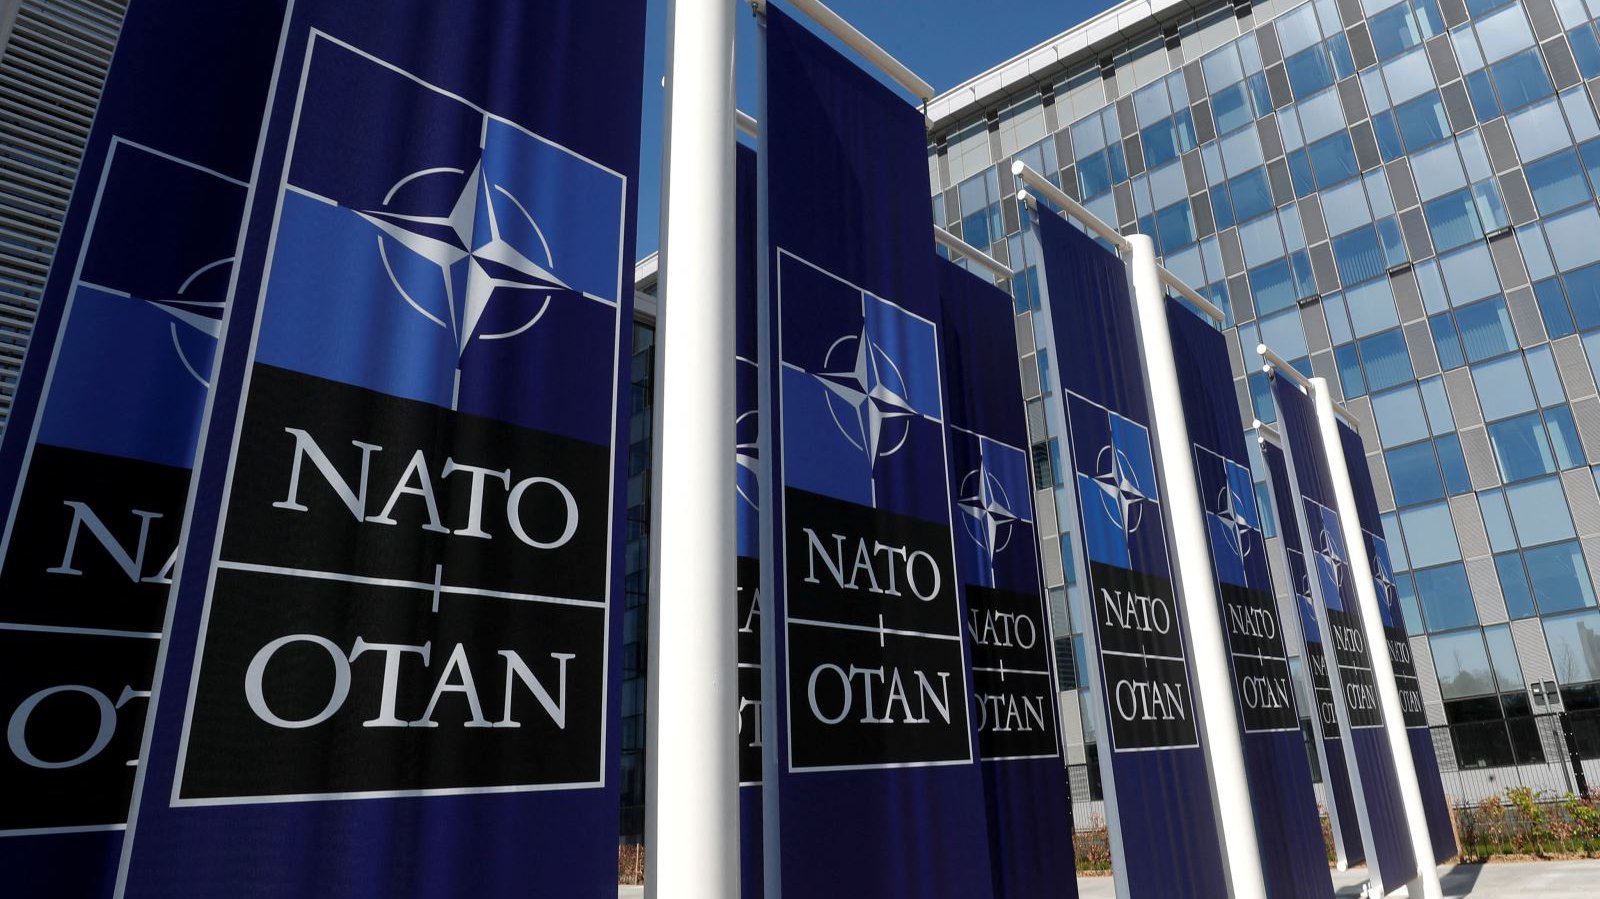 Thụy Điển và Phần Lan muốn sớm được Thổ Nhĩ Kỳ chấp thuận để gia nhập NATO